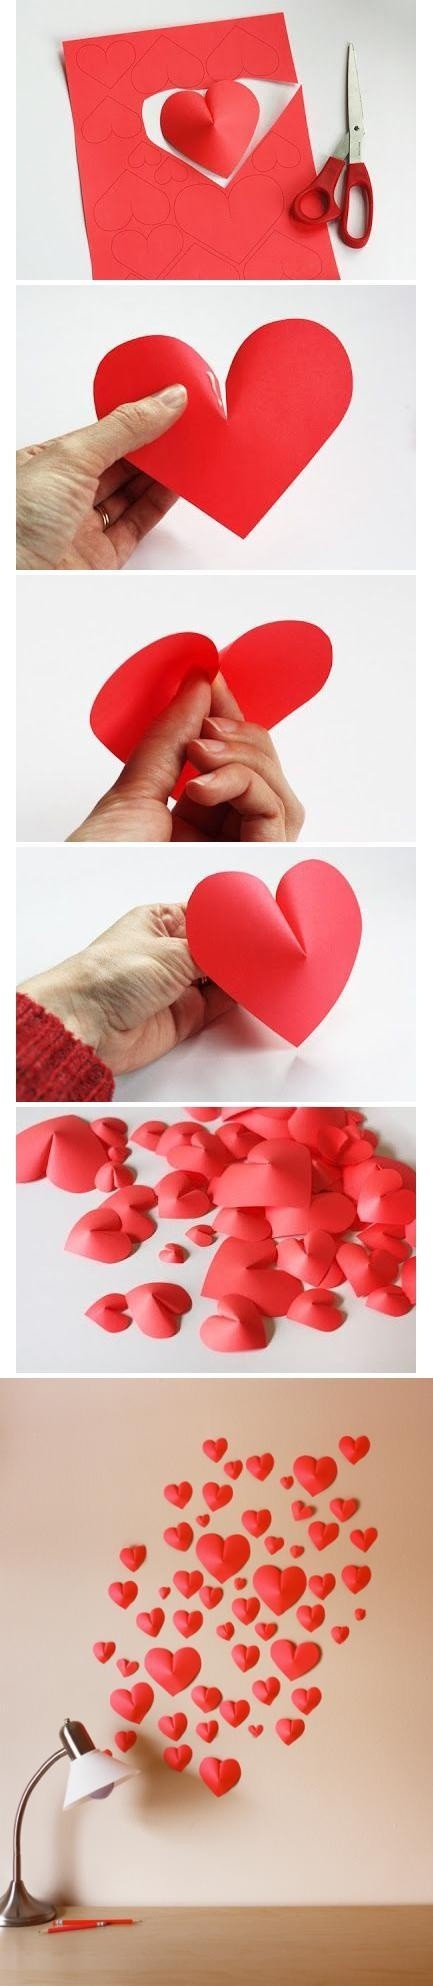 Gear Heart Papercraft 27 Best Anyák Napi Images On Pinterest